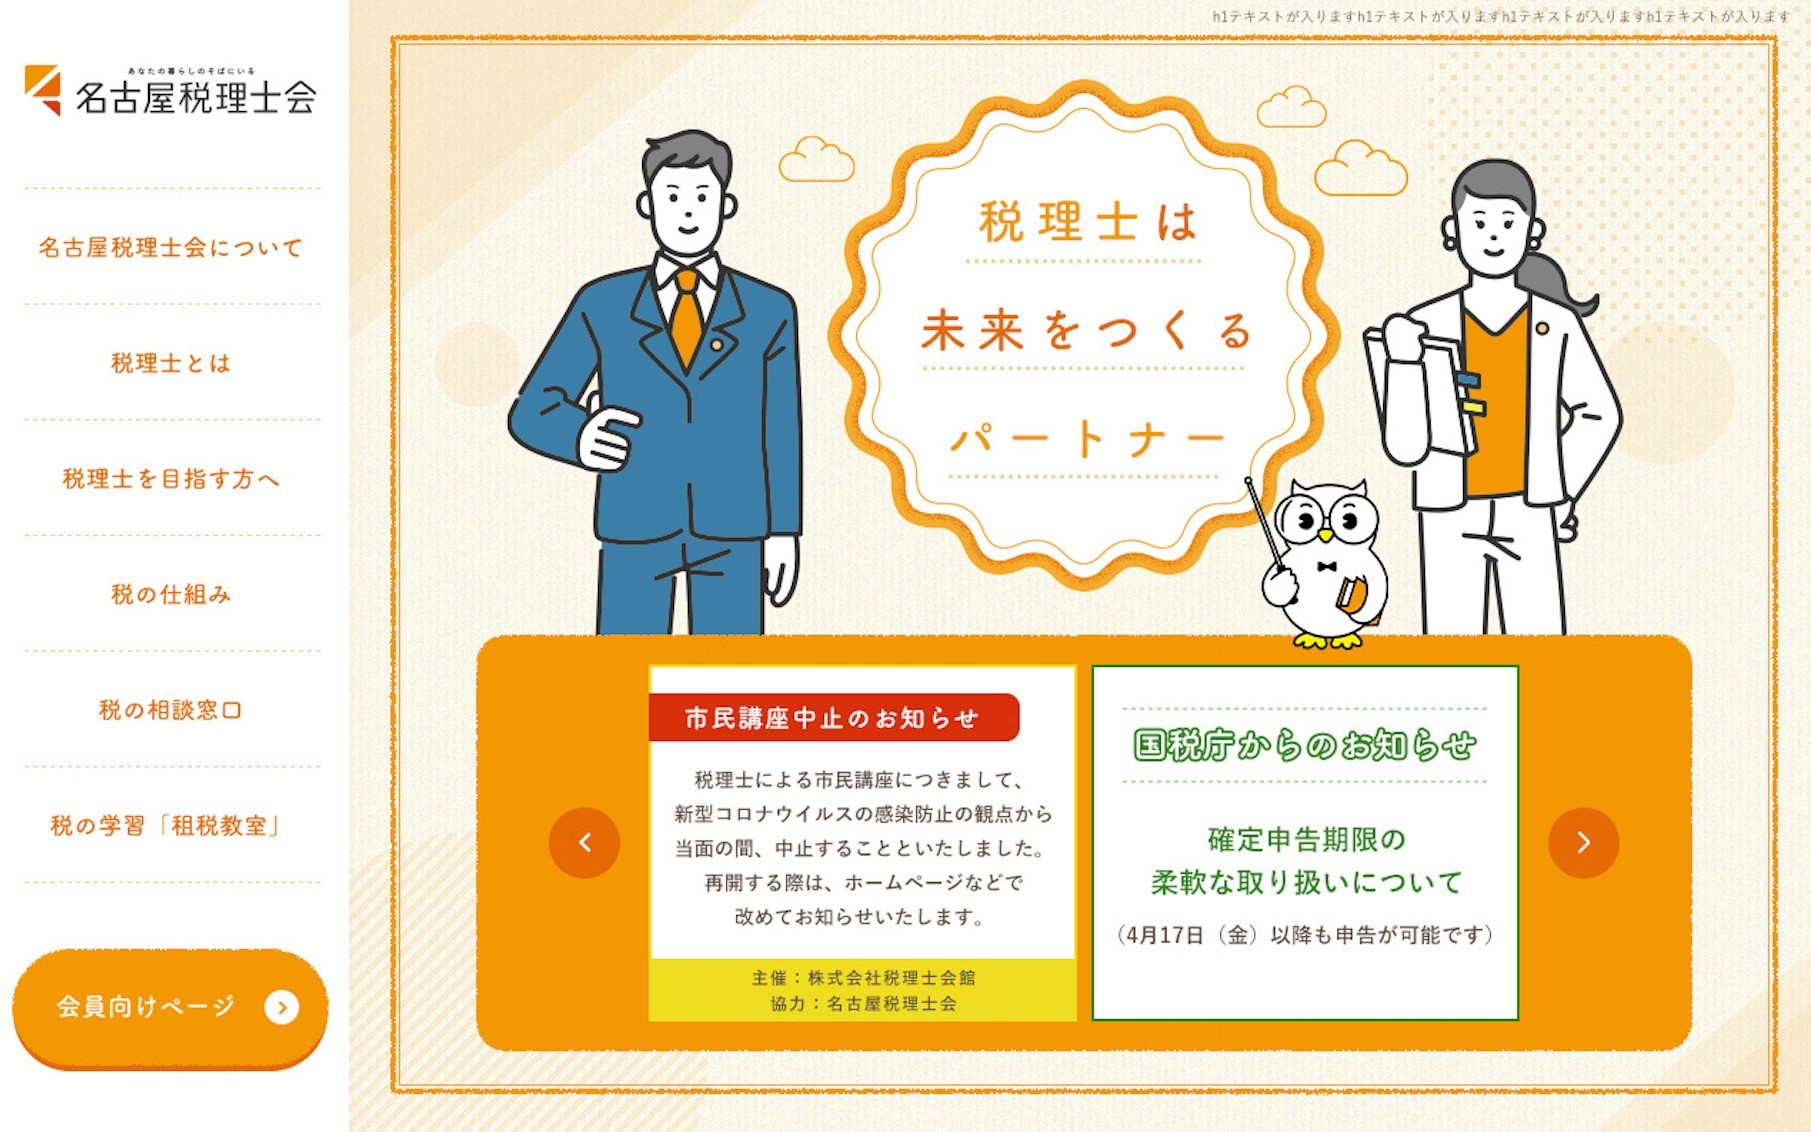 名古屋税理士会 | Web制作・ホームページ制作実績 | Web幹事